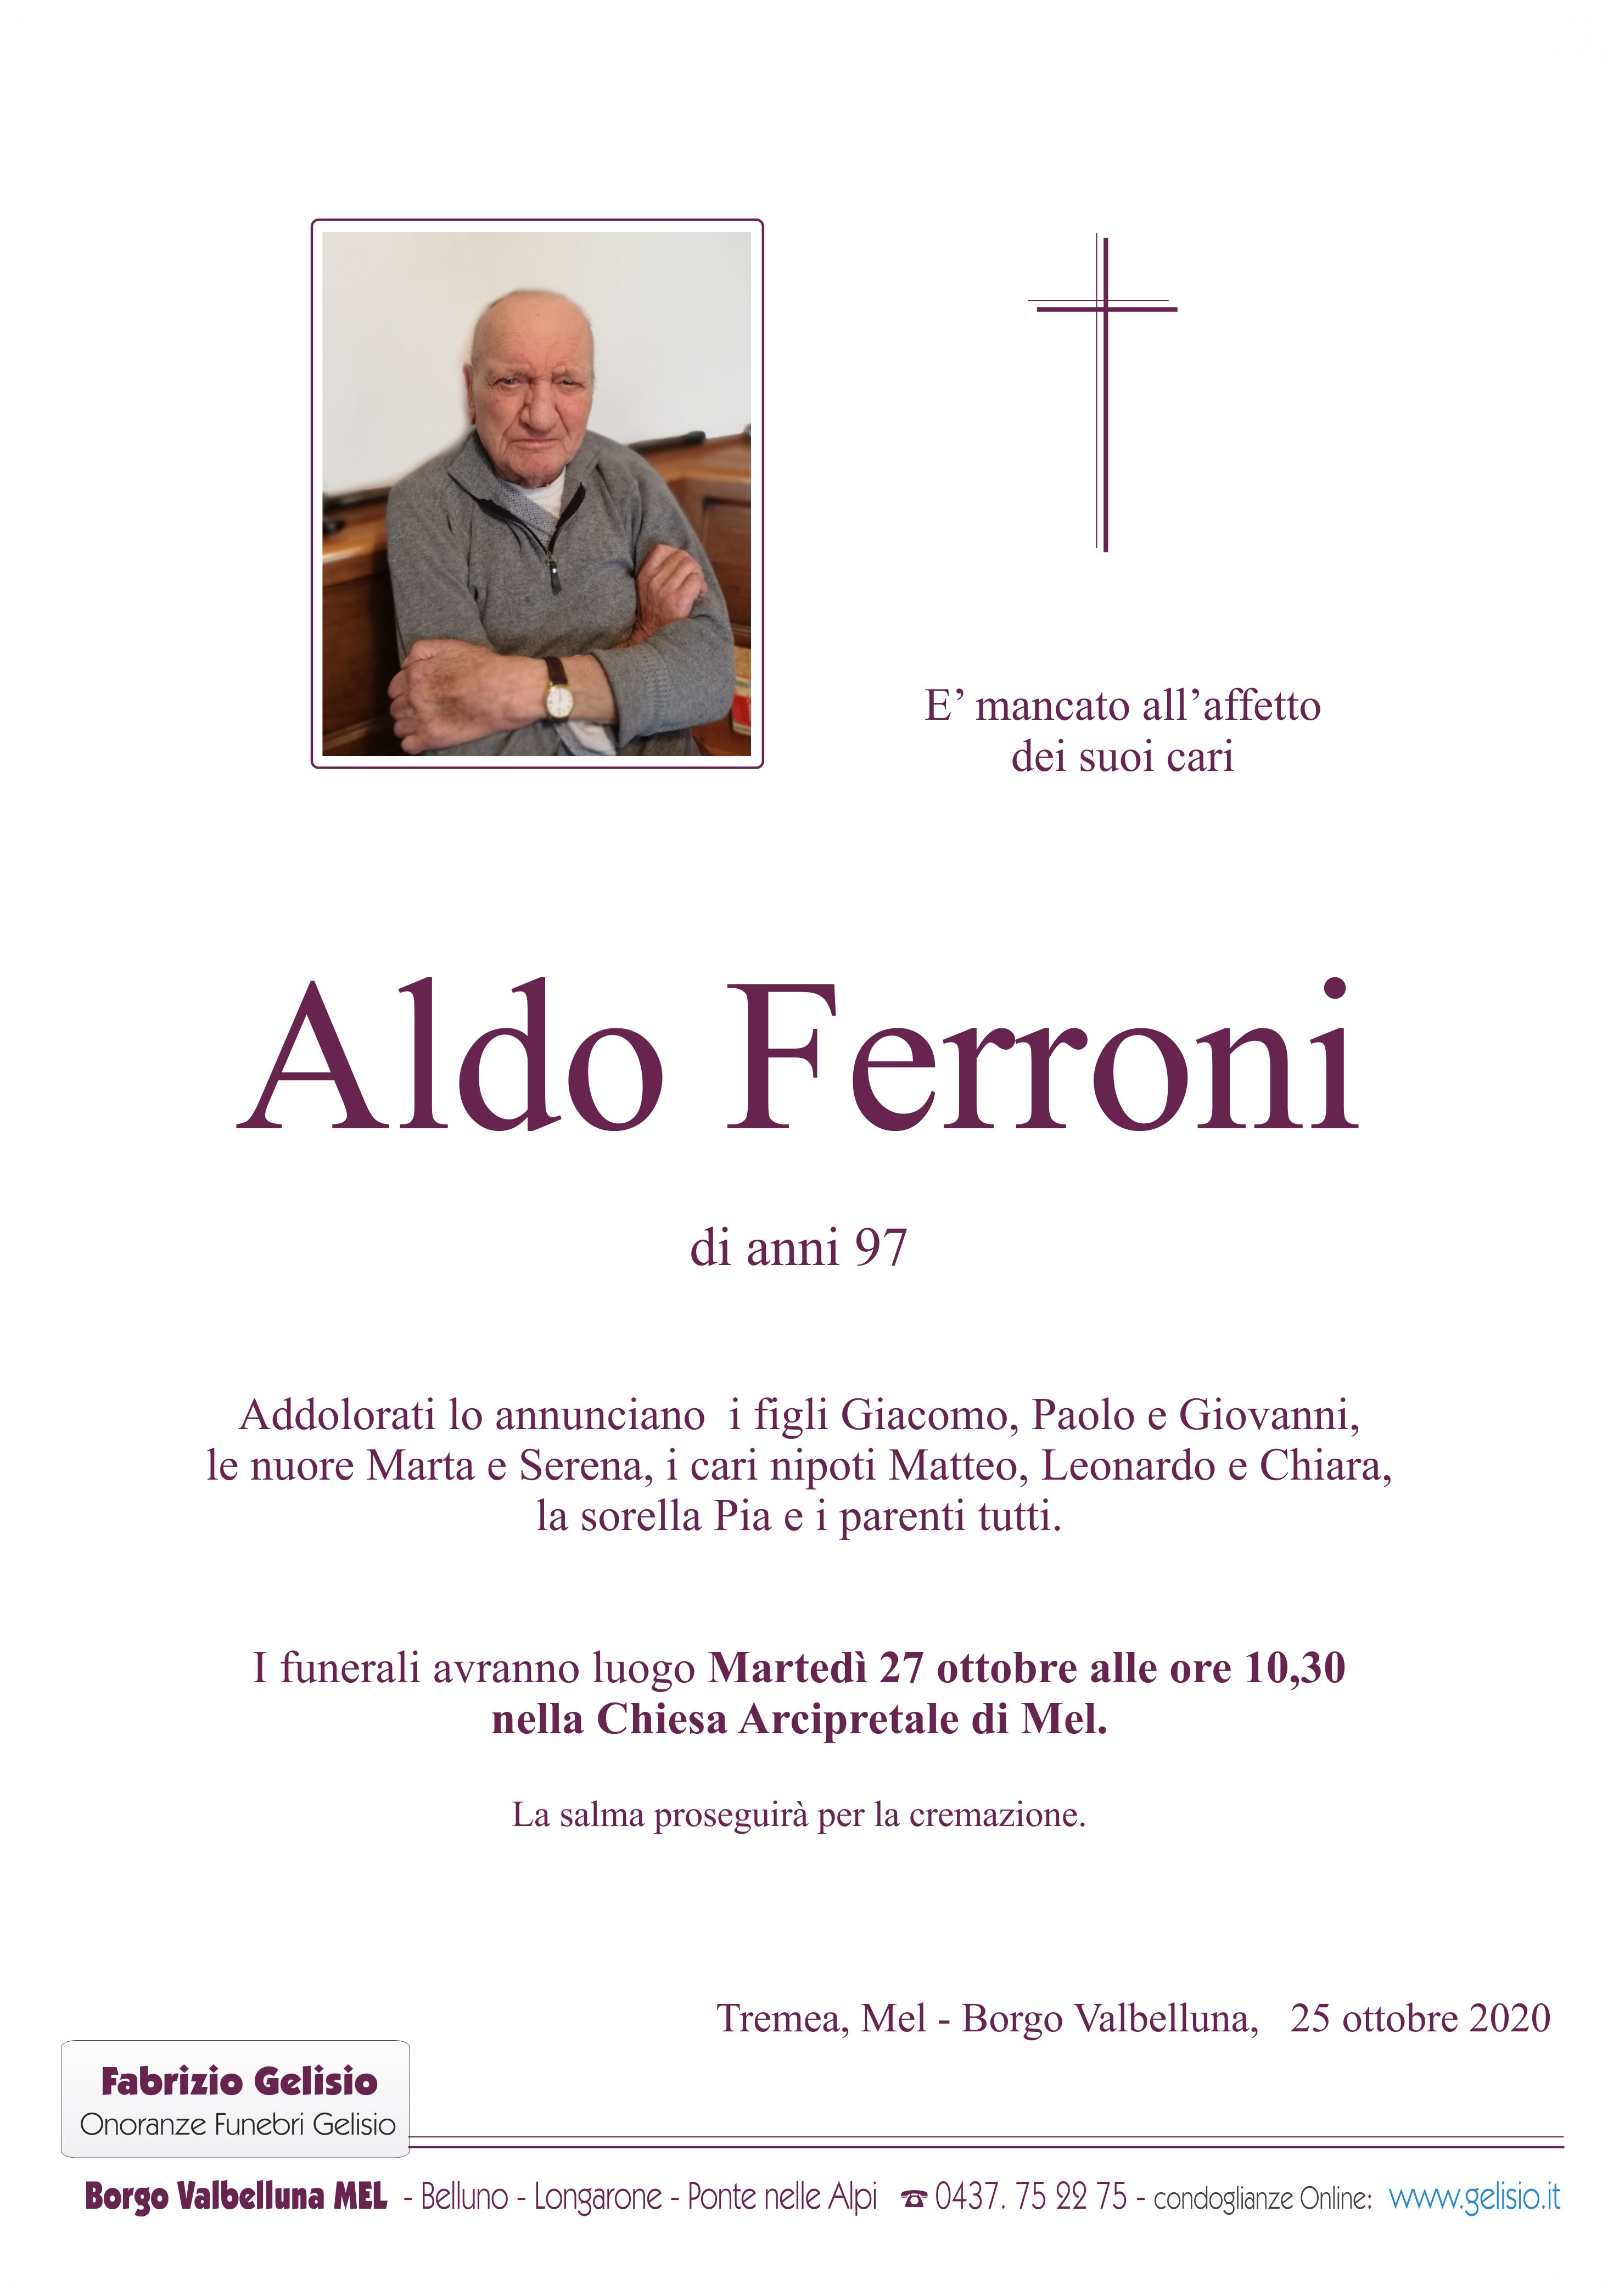 Ferroni Aldo